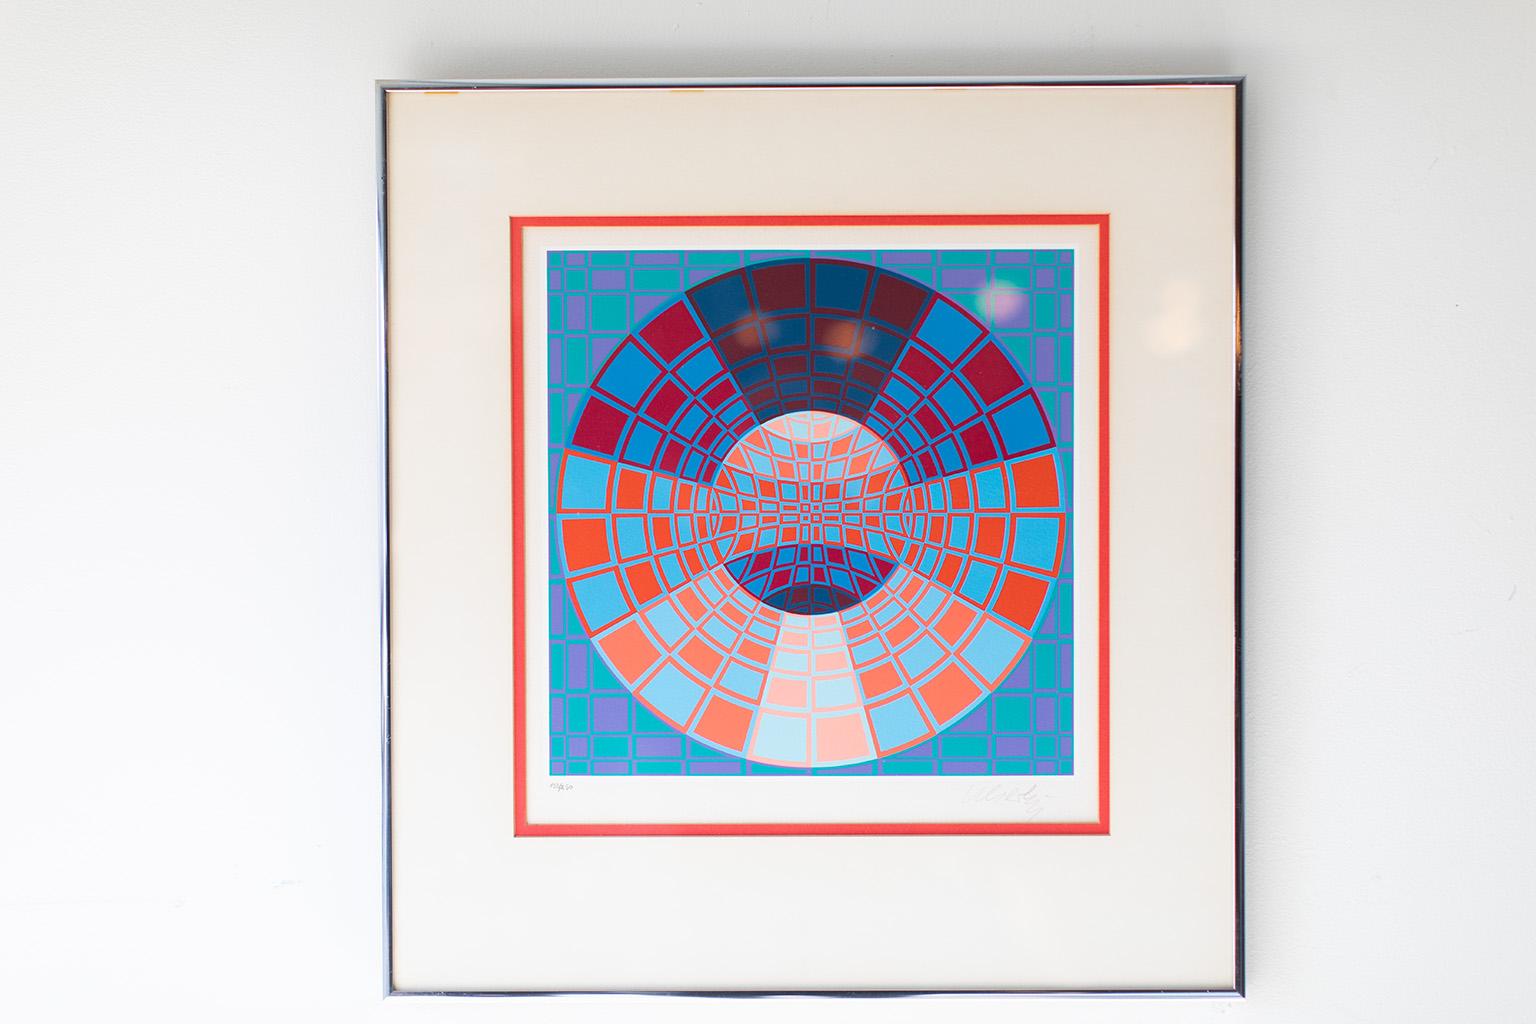 Künstler: Victor Vasarely

Medium: Lithographie
Bewegung/Stil: Modern
Signiert und nummeriert : 133/250


Zustand:

Diese Victor Vasaerly Lithographie ist in sehr gutem Zustand. Die Kunst ist lebendig und ohne Schäden. Es sieht so aus, als